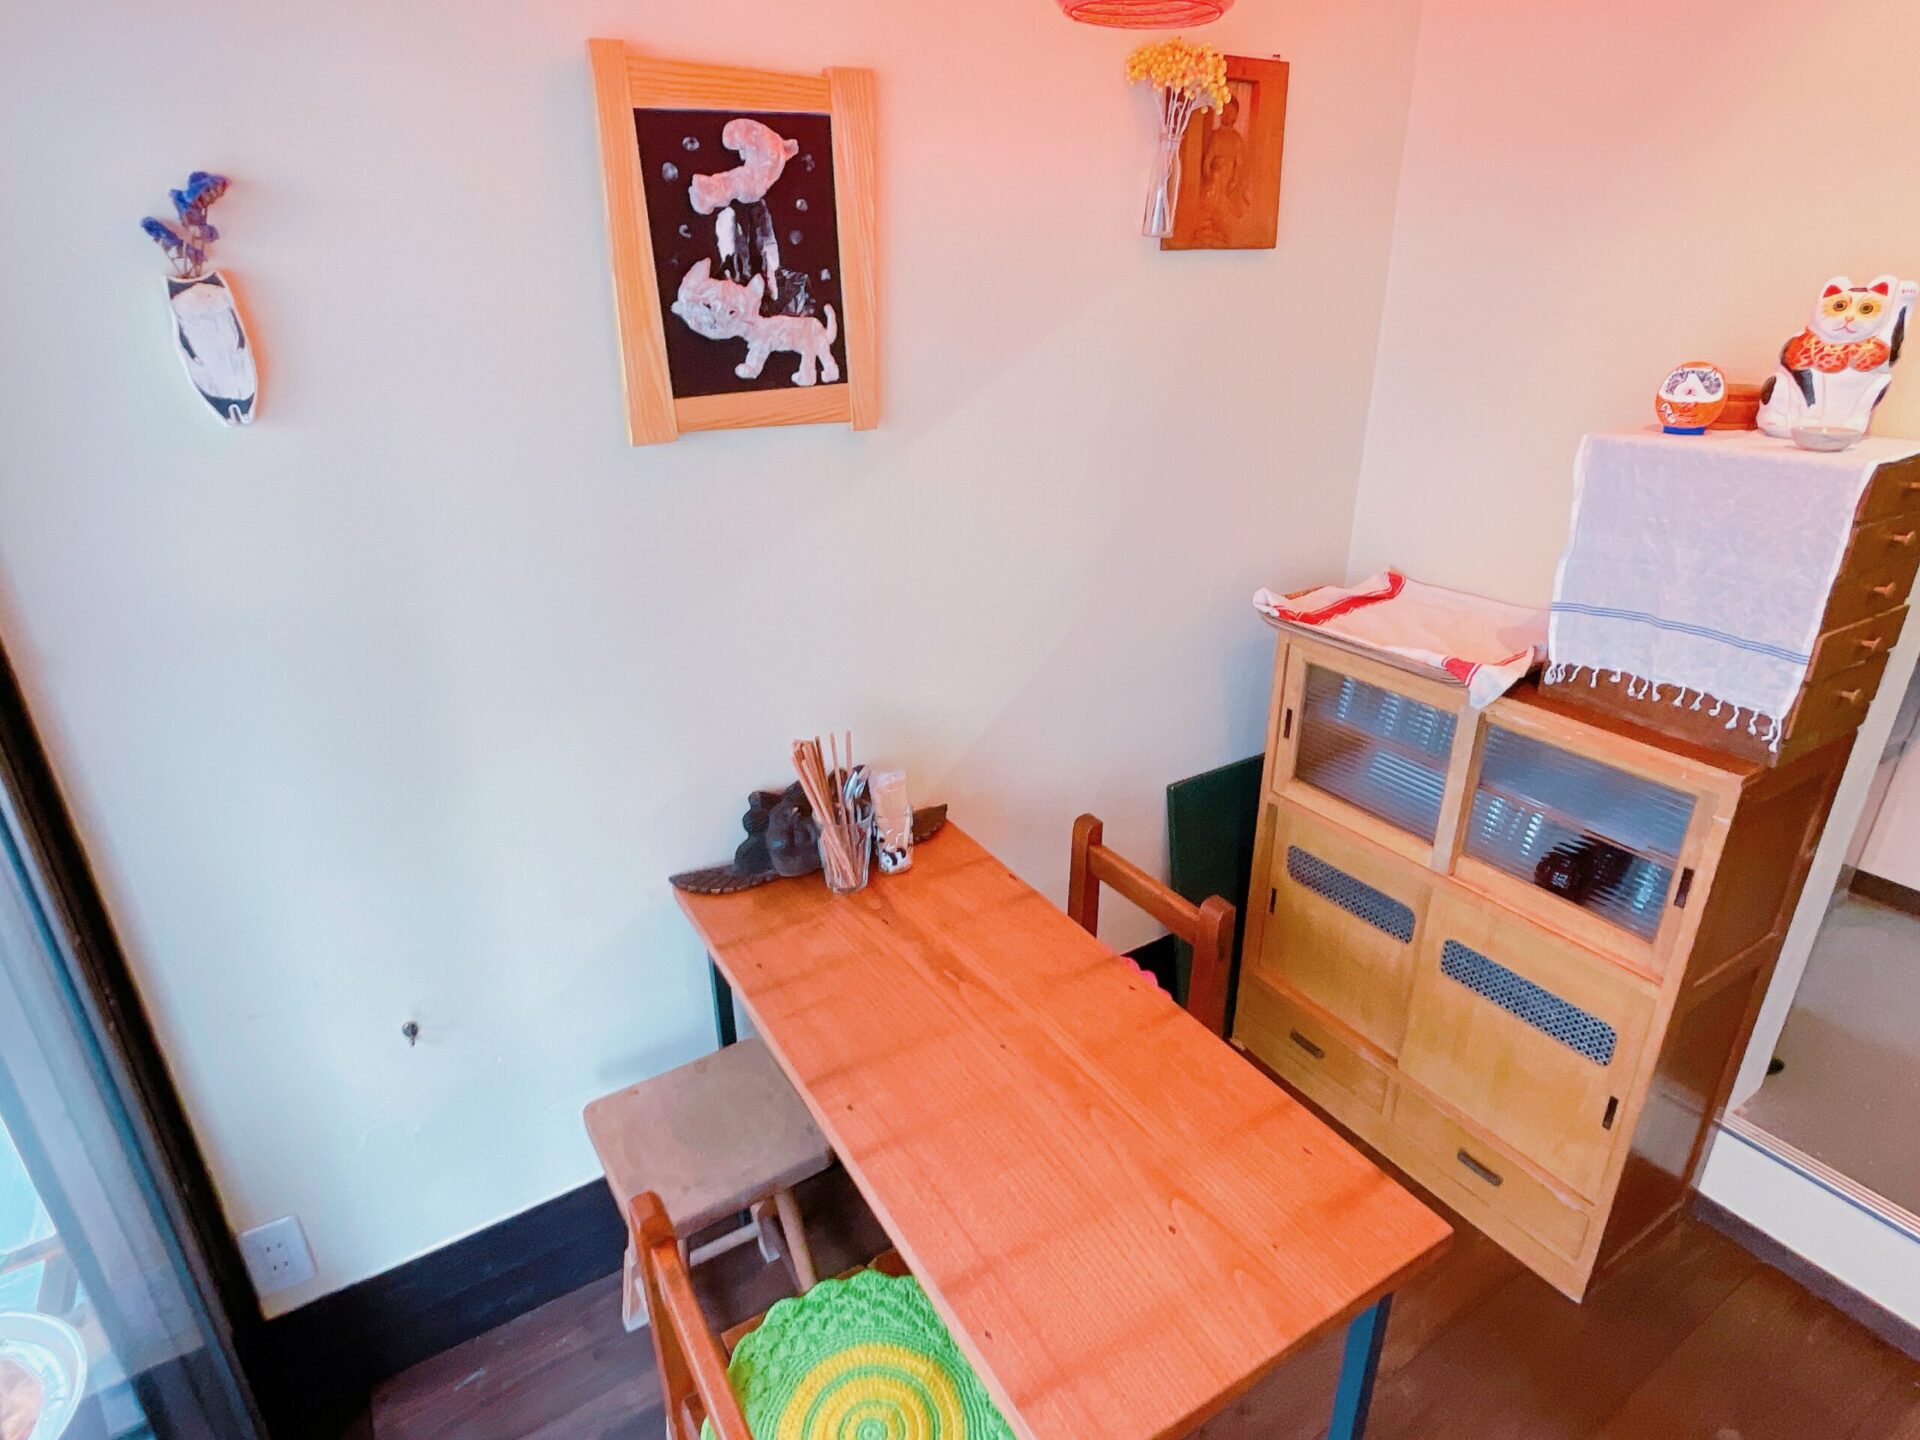 吉祥寺通りのカフェ「ヤマネコロッヂ」のテーブル席